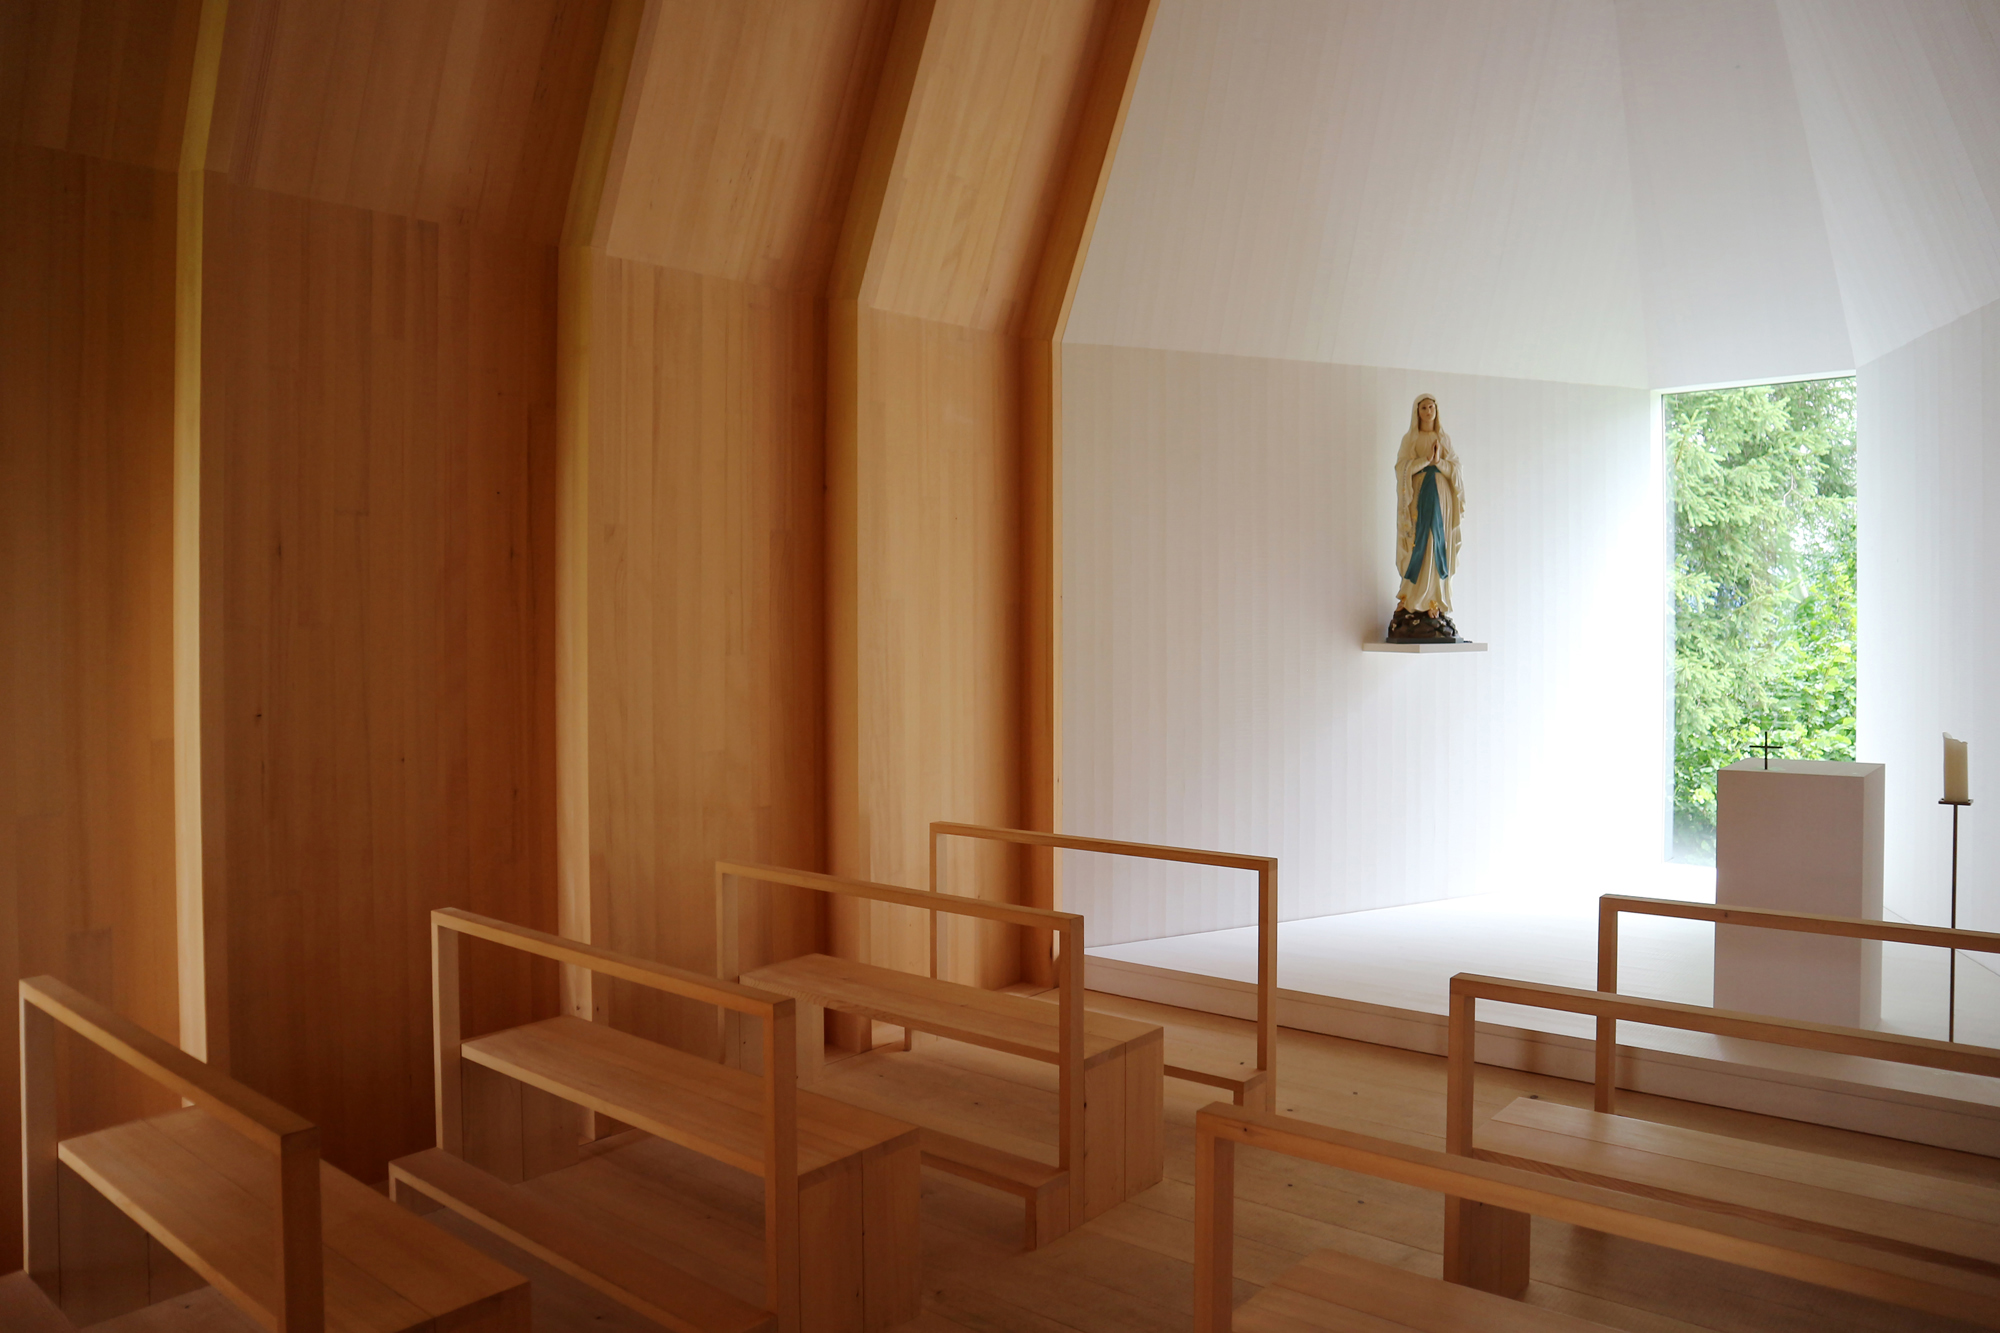 Die Kapelle wurde 2016 nach einem Entwurf des Bregenzer Architekten Bernardo Bader errichtet.